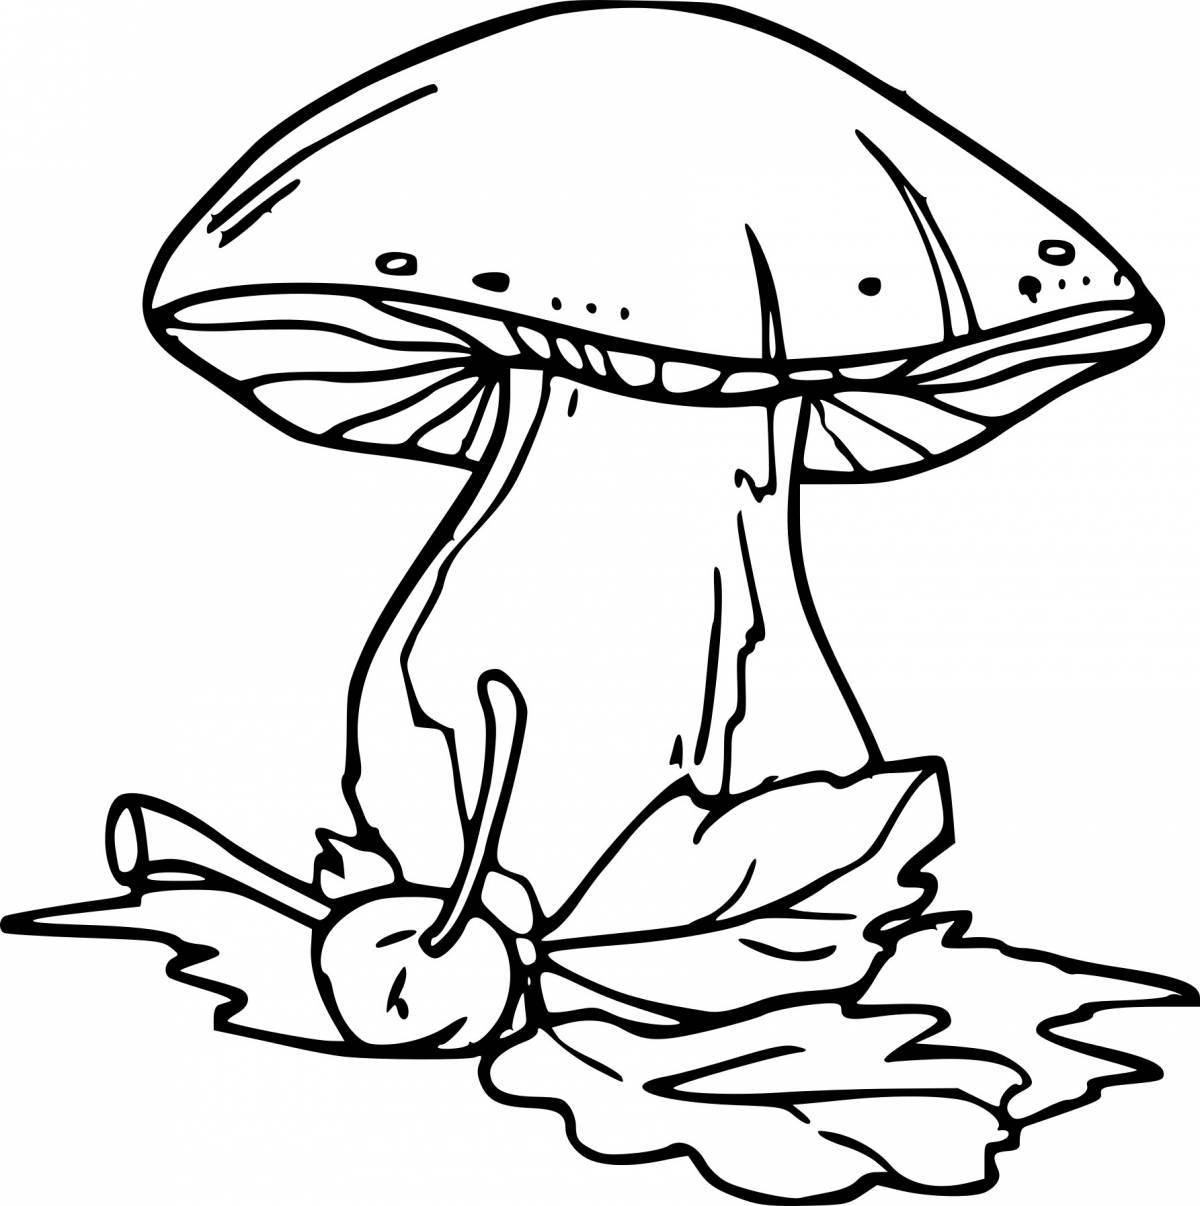 Cute champignon coloring page